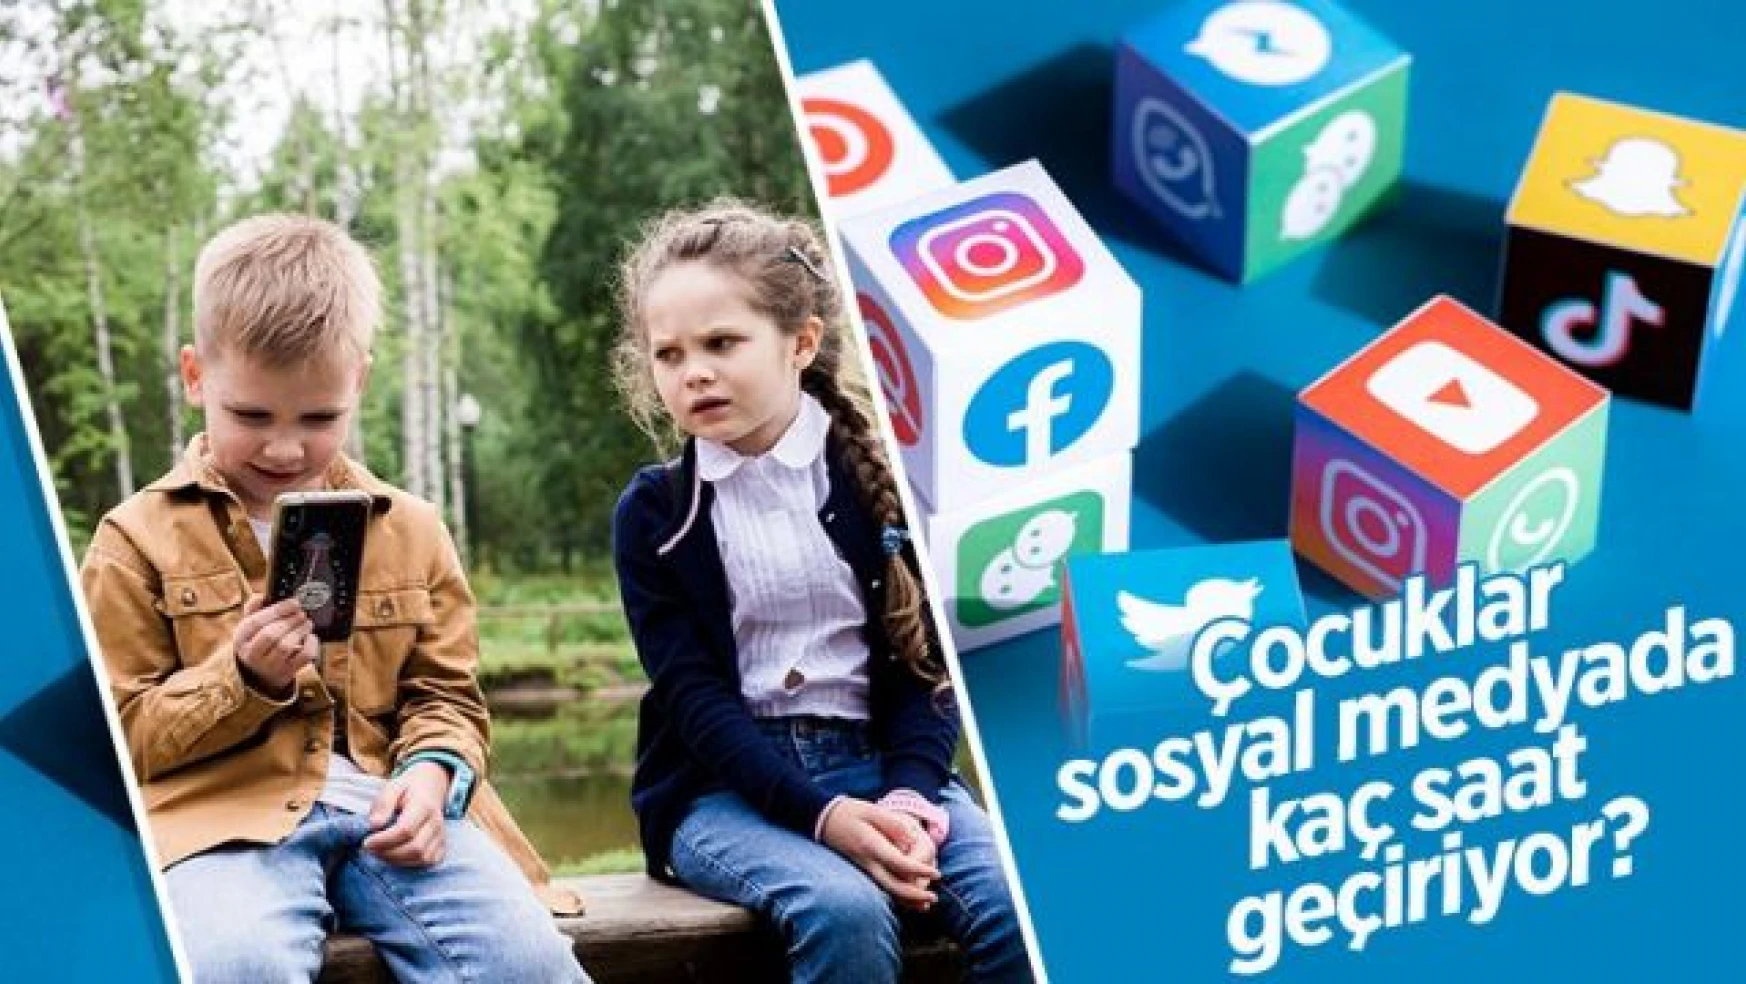 Çocuklar sosyal medyada kaç saat geçiriyor?